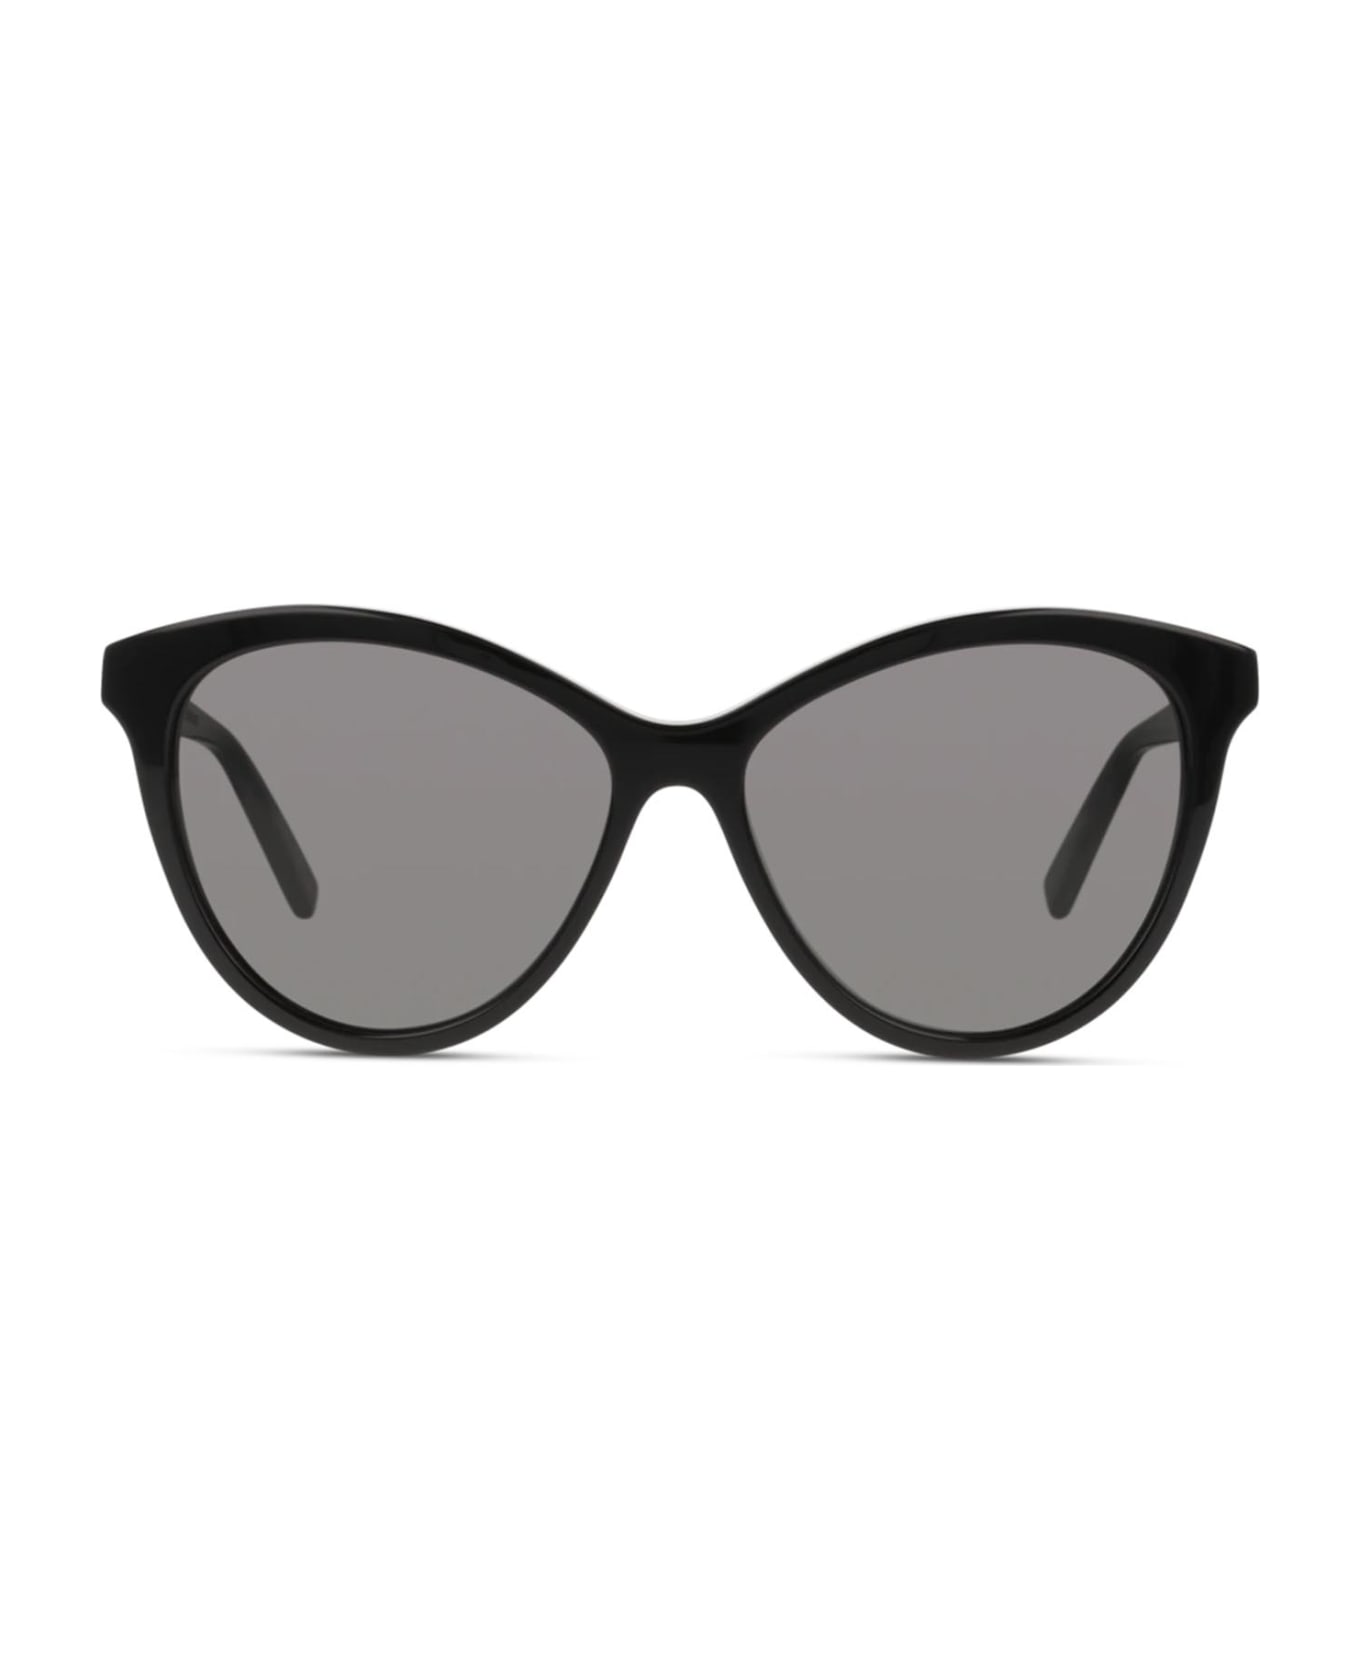 Saint Laurent Eyewear Sl 456 Black Sunglasses - Black